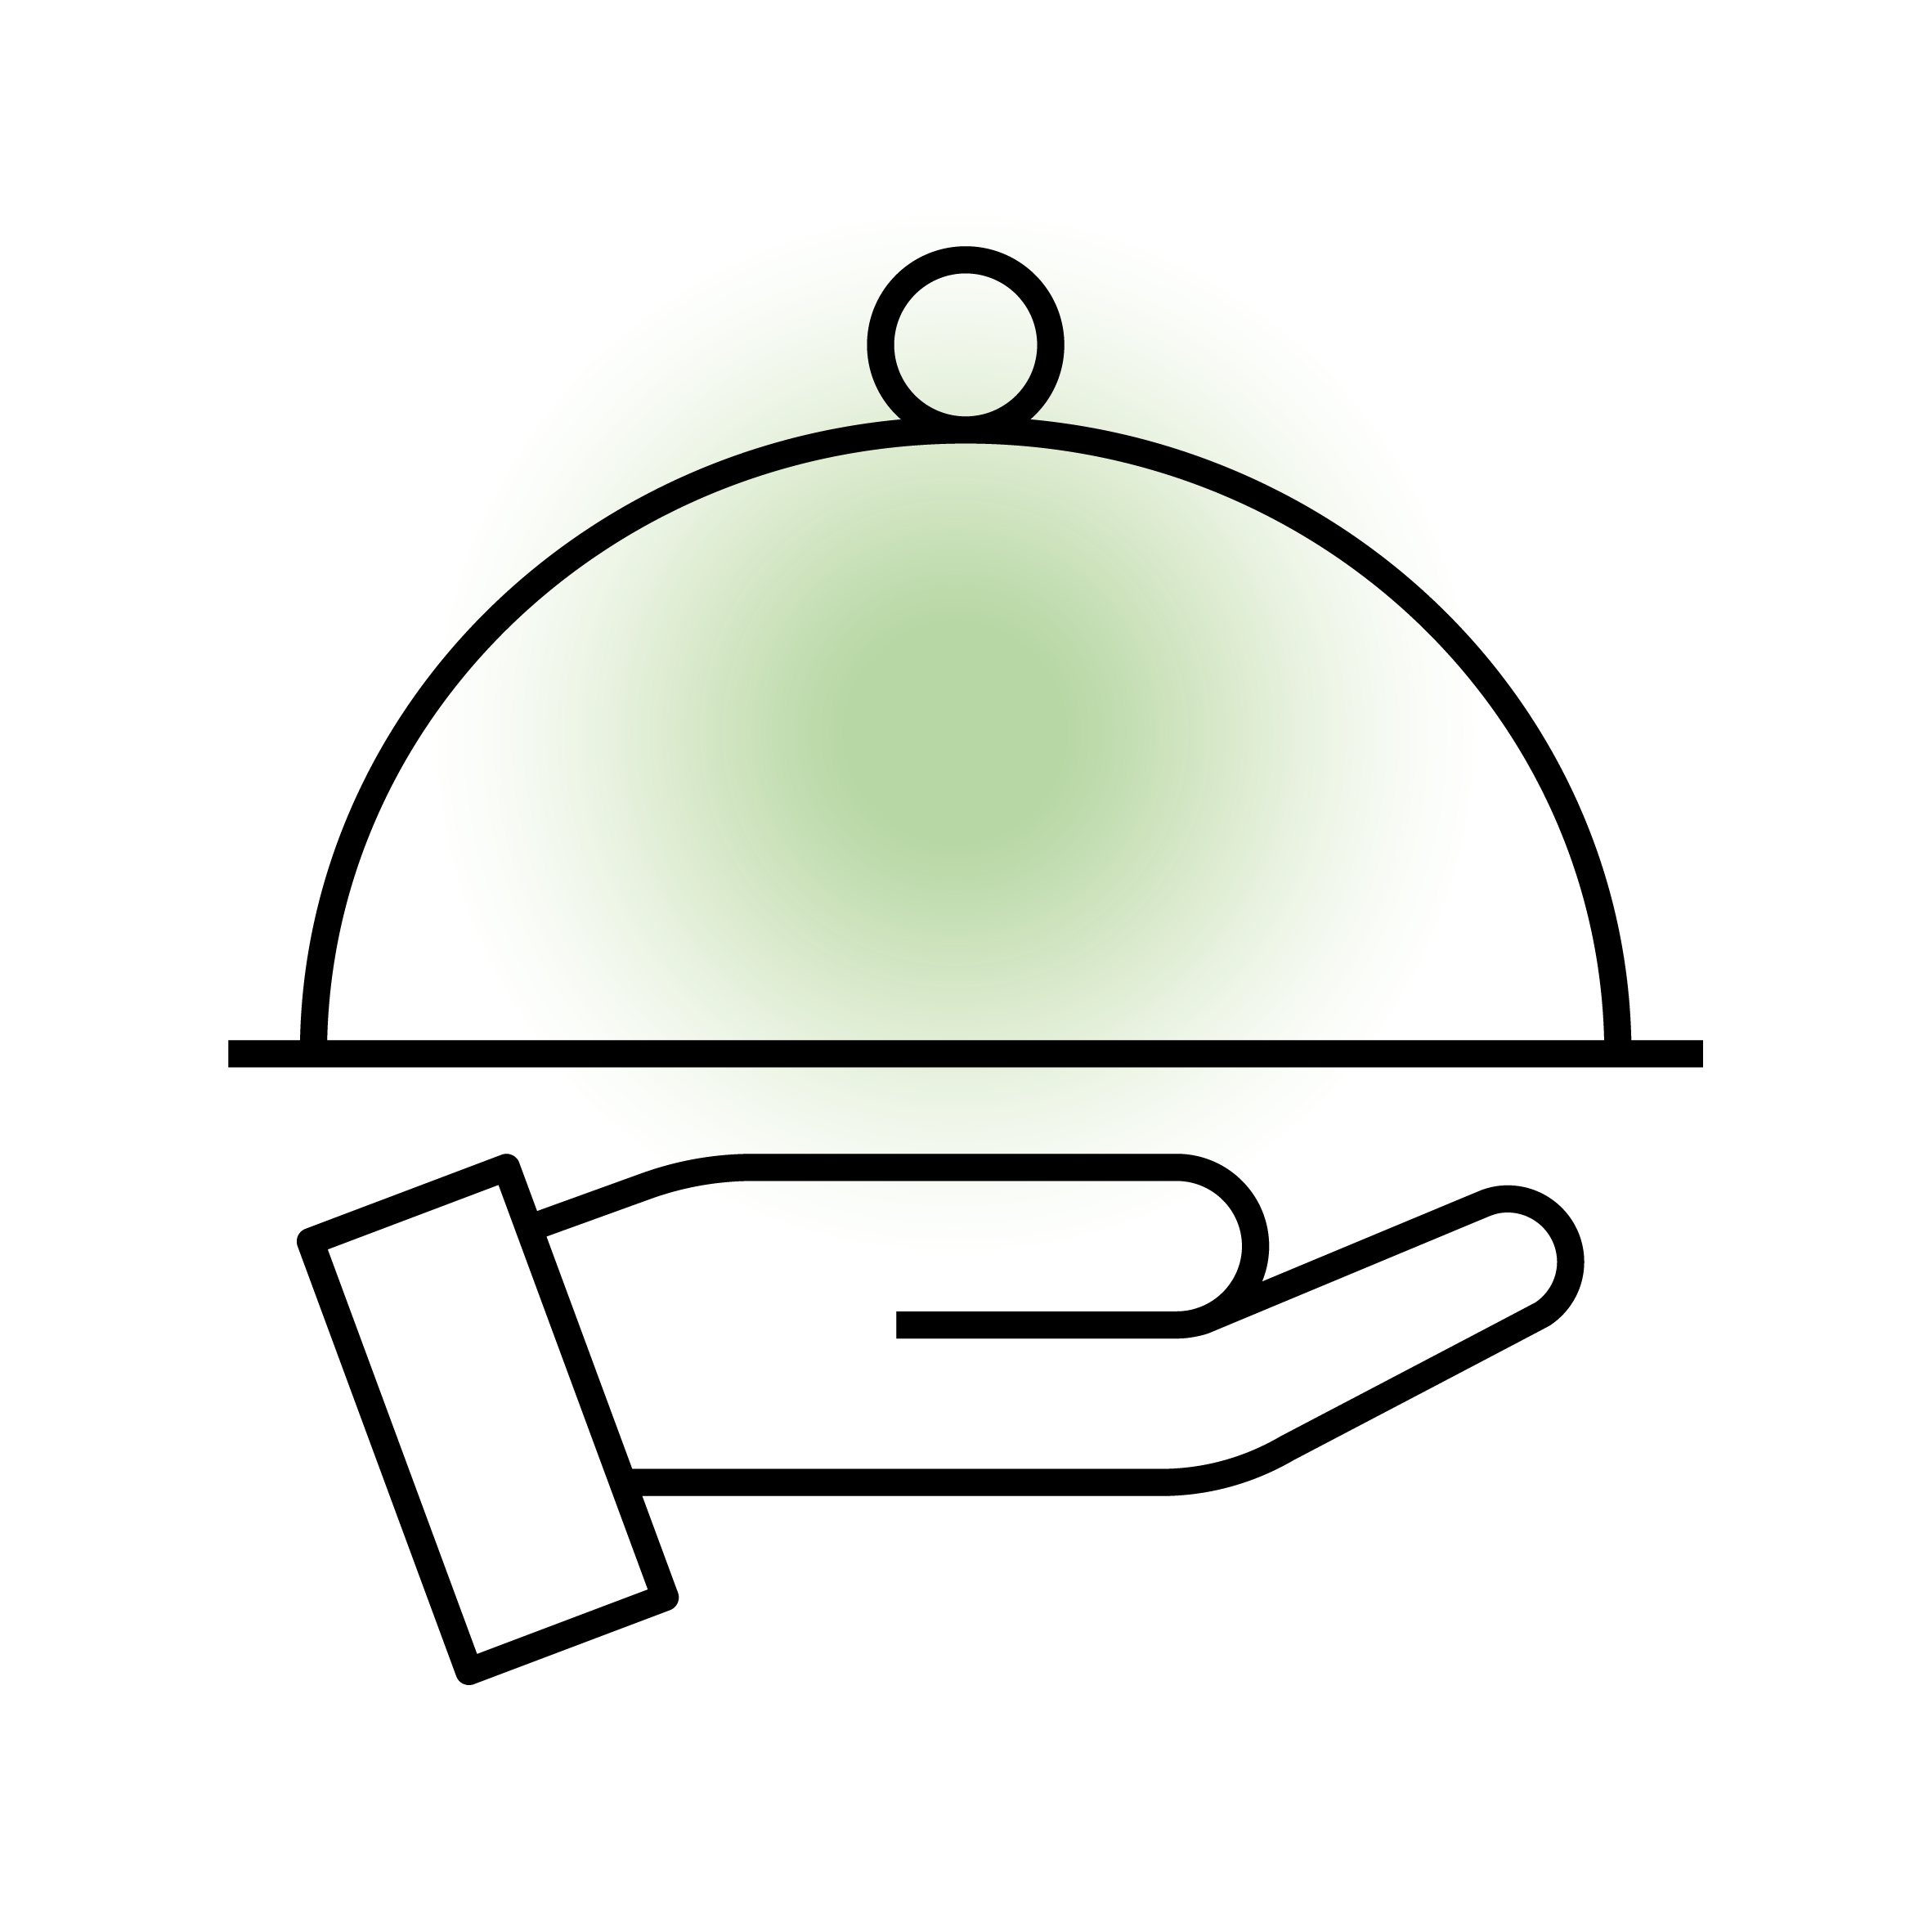 Servierglocke auf Handfläche als Symbol für Gastronomie und Service.